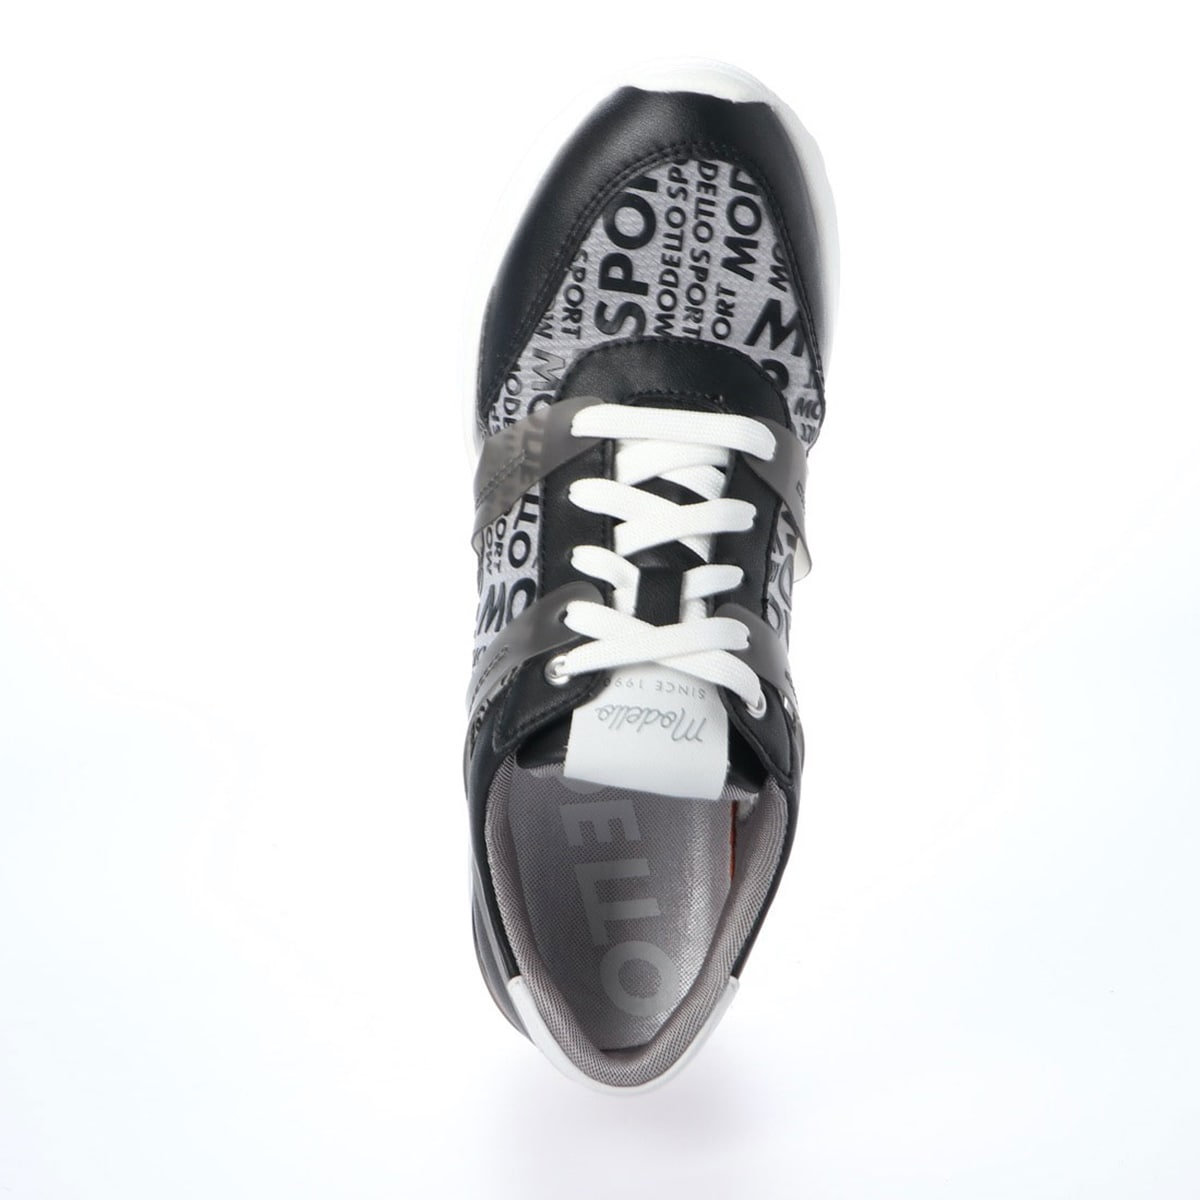 モデロ Modello ヒールアップで足長効果 ロゴプリントでスポーティー ヒールアップスニーカー Dml102 23 Black ウィメンズ Madras マドラス公式サイト オンラインショップ 靴メーカー直営公式通販